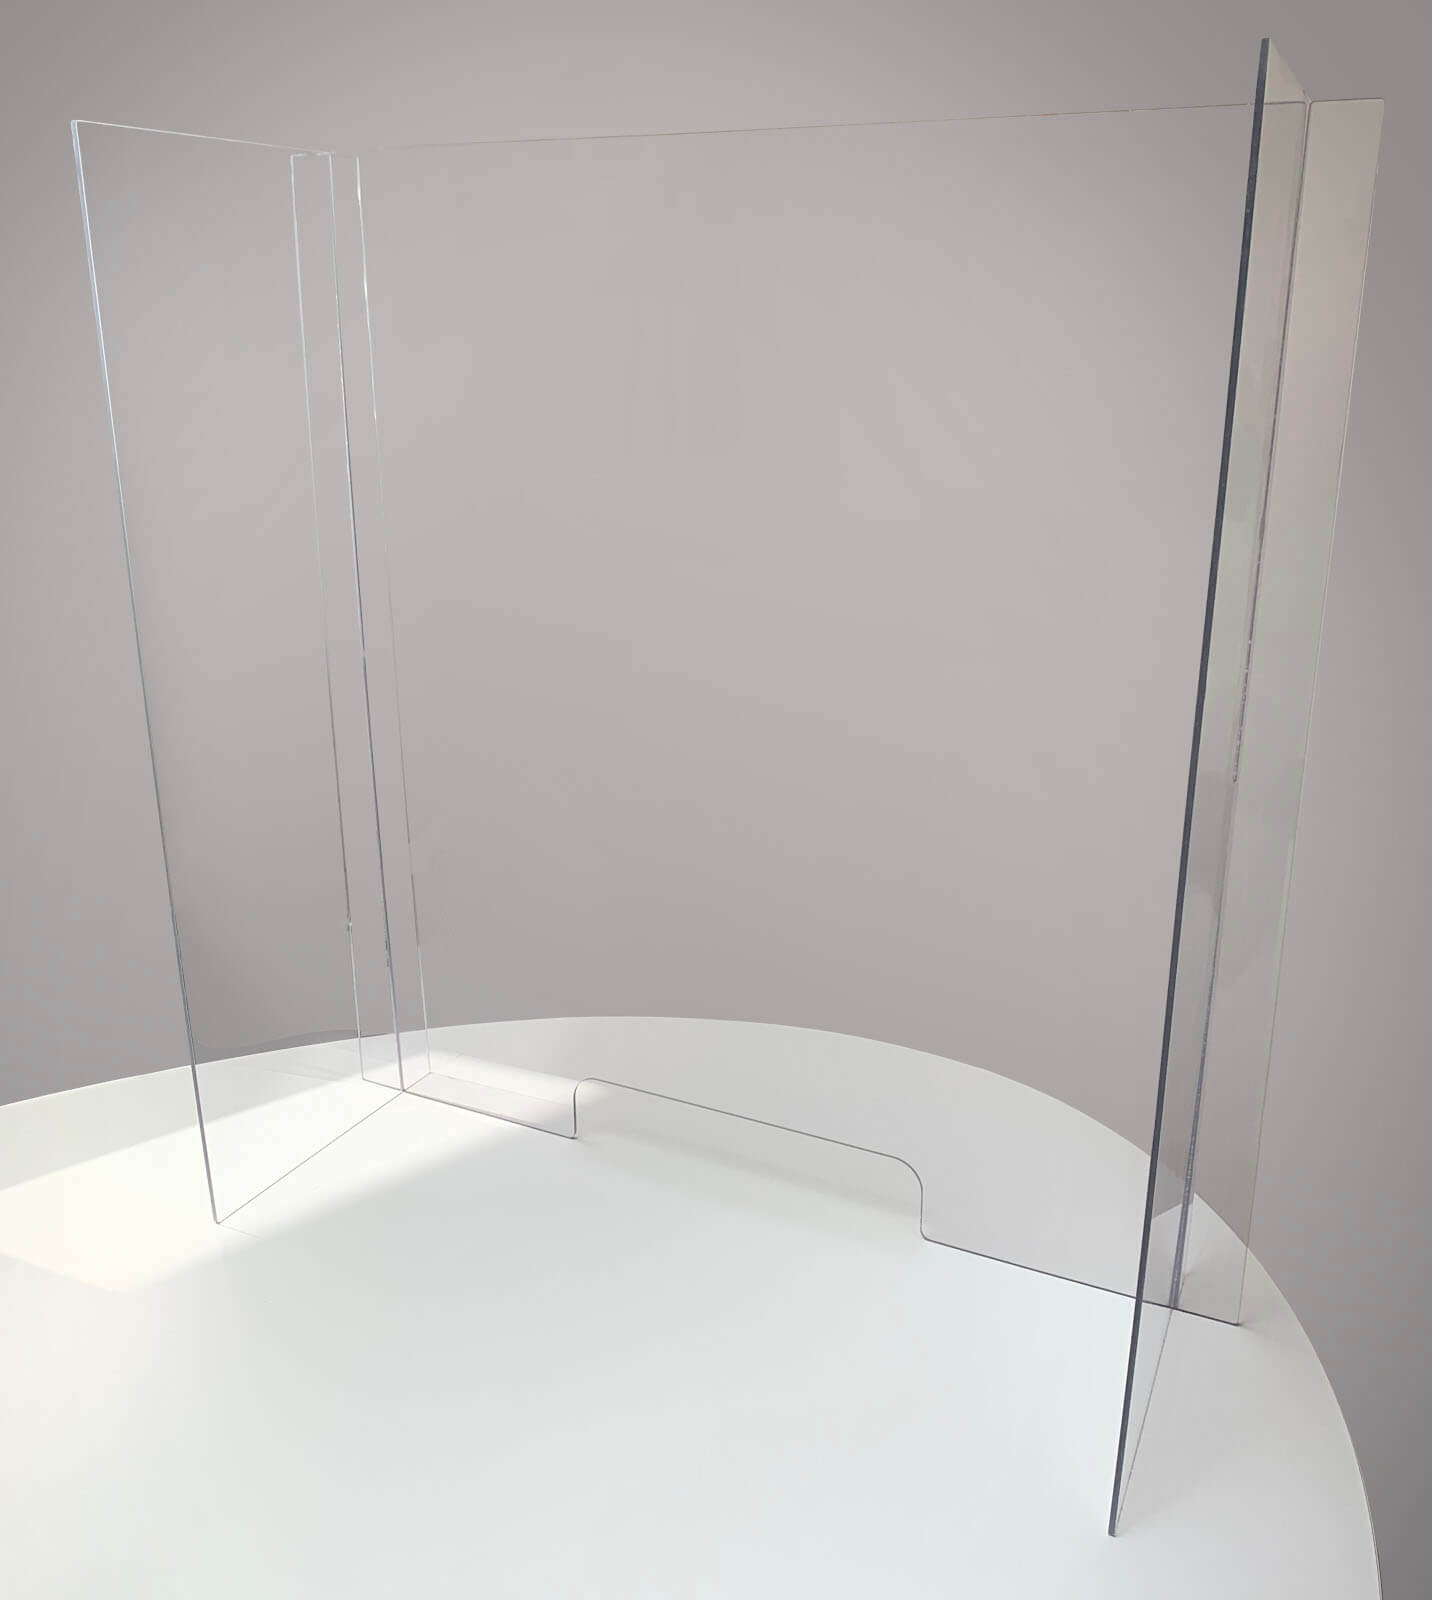 Glasklar Plexiglas Schutzwand- sichern Spuckschutz Thekenaufsatz mit Seitenschutz Zum Rezeption QoFina Spuckschutz Plexiglas Transparent Arbeitsplatte Schutz Teiler Barriere